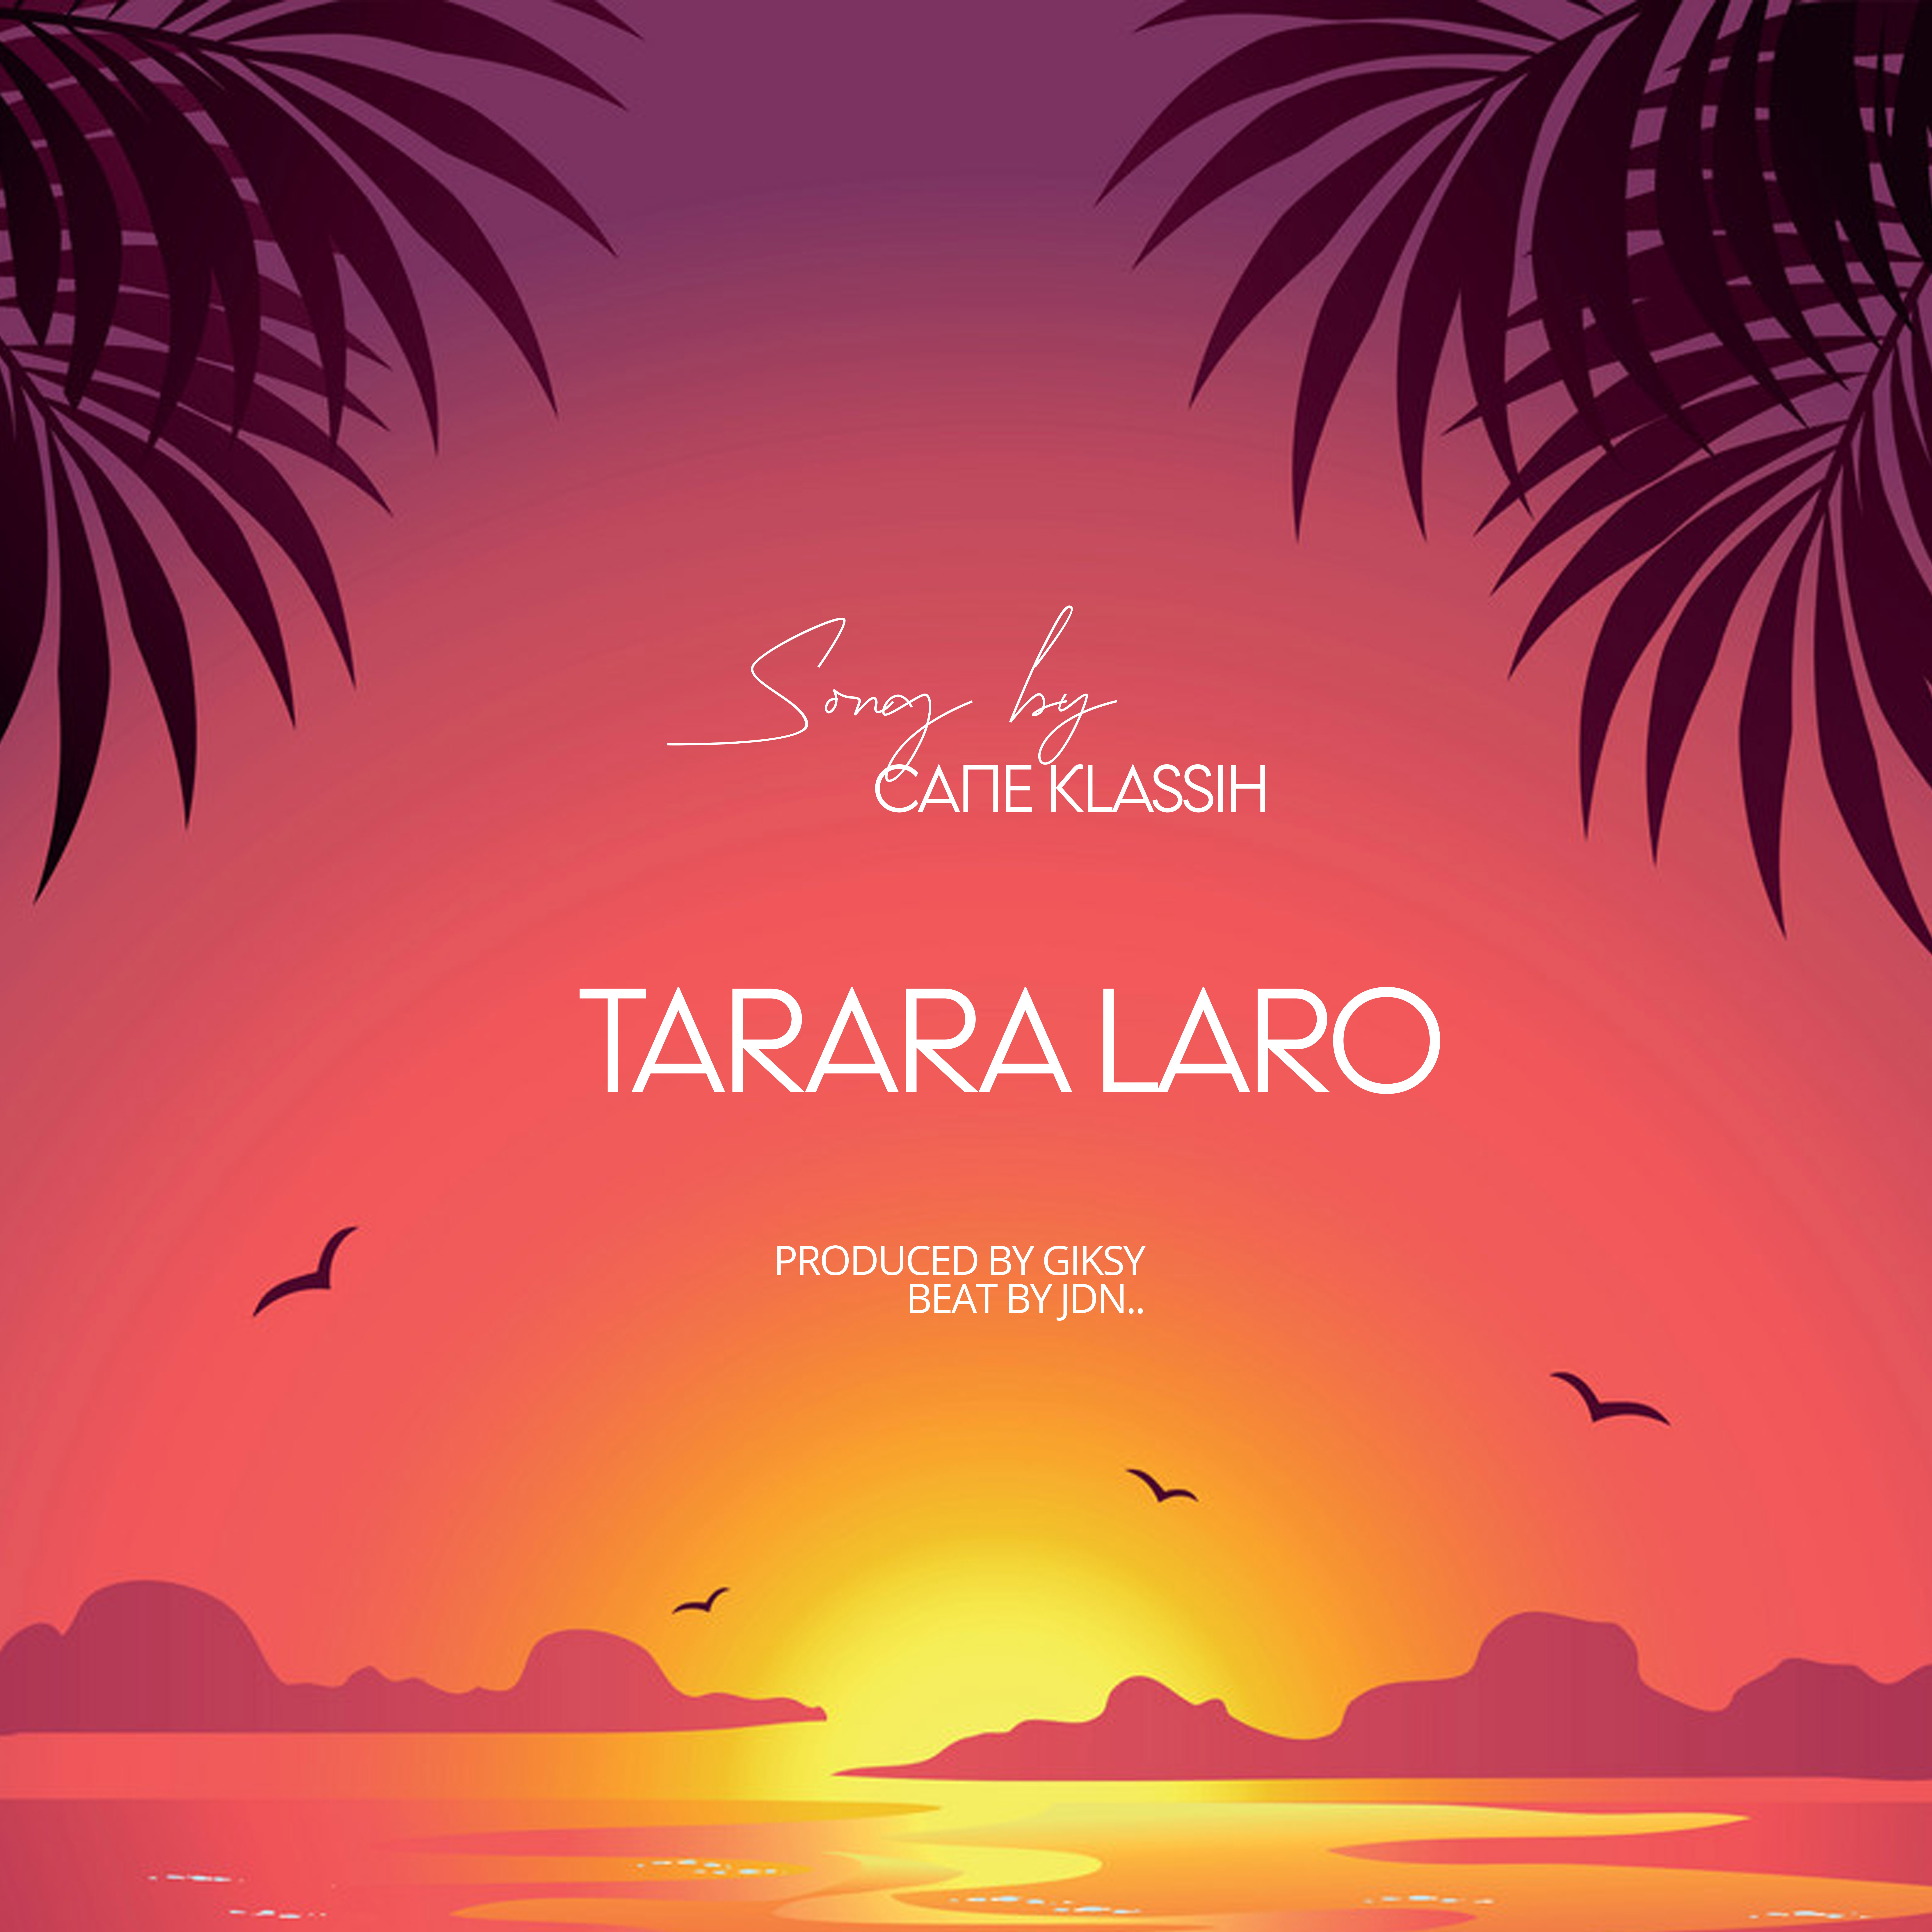 Tarara Laro